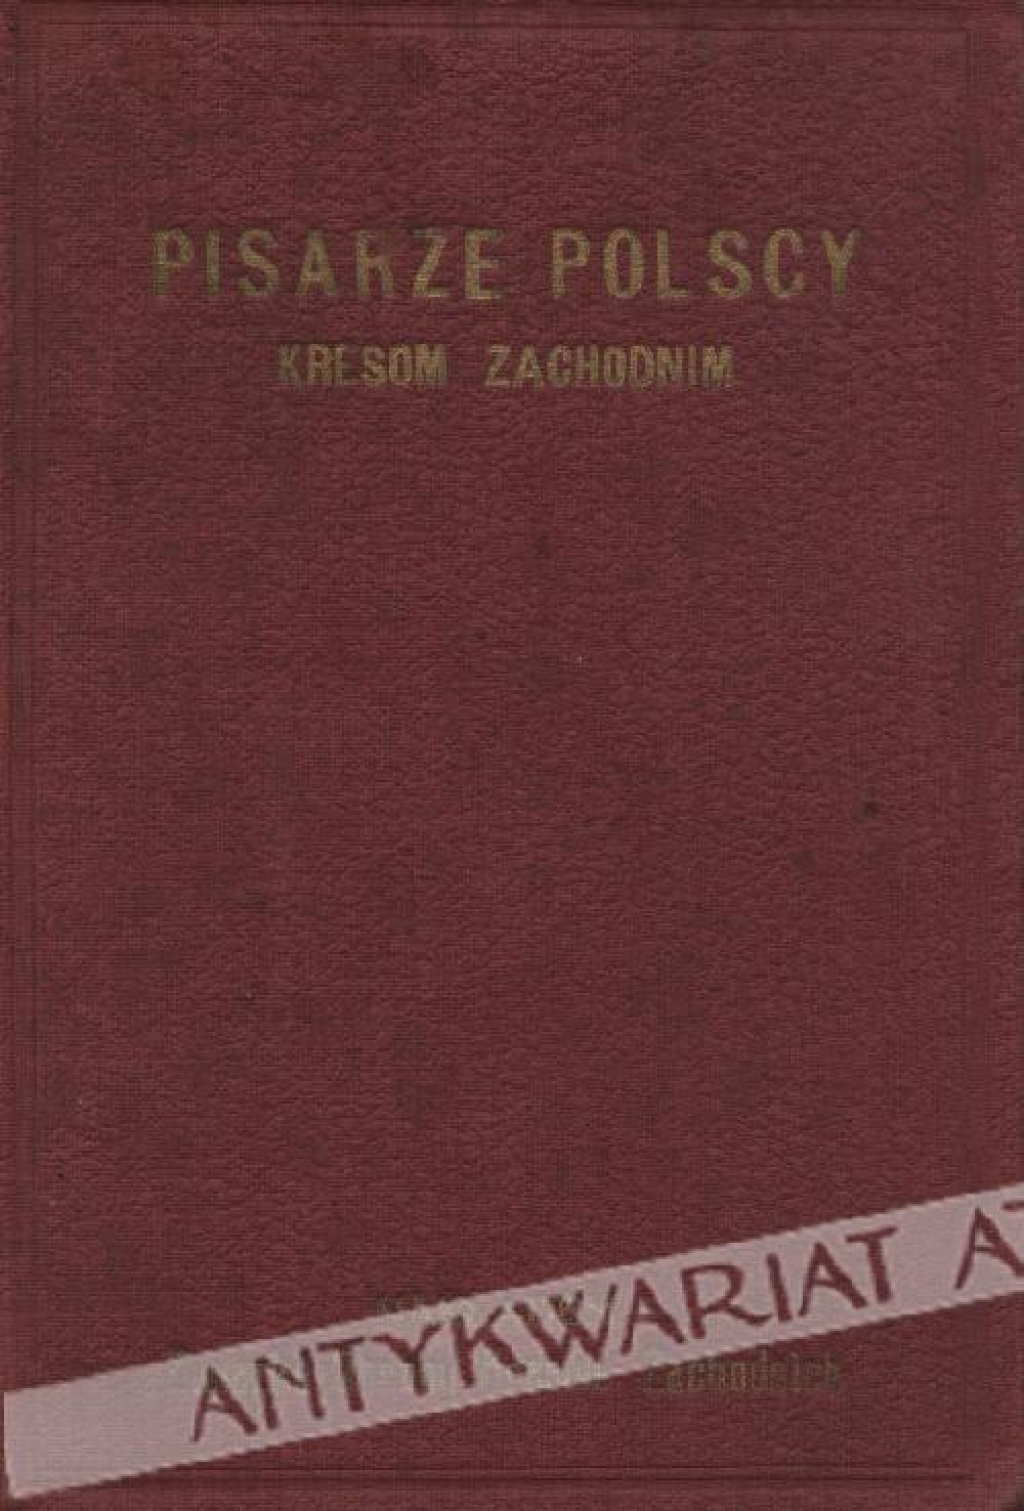 Pisarze polscy kresom zachodnim